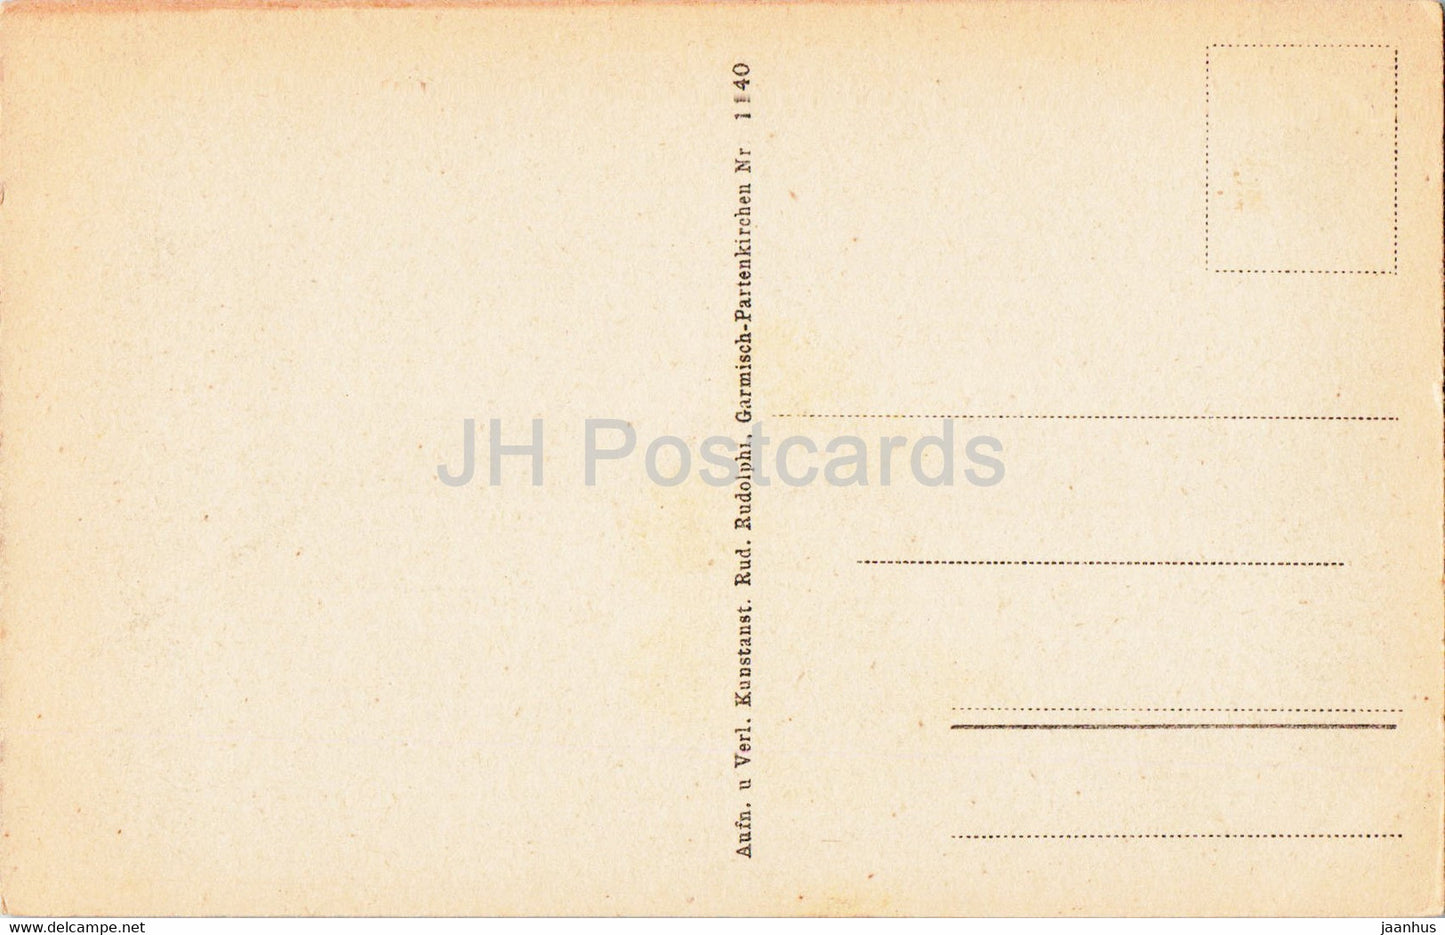 Gewitterstimmung am Eibsee - 1140 - old postcard - Germany - unused